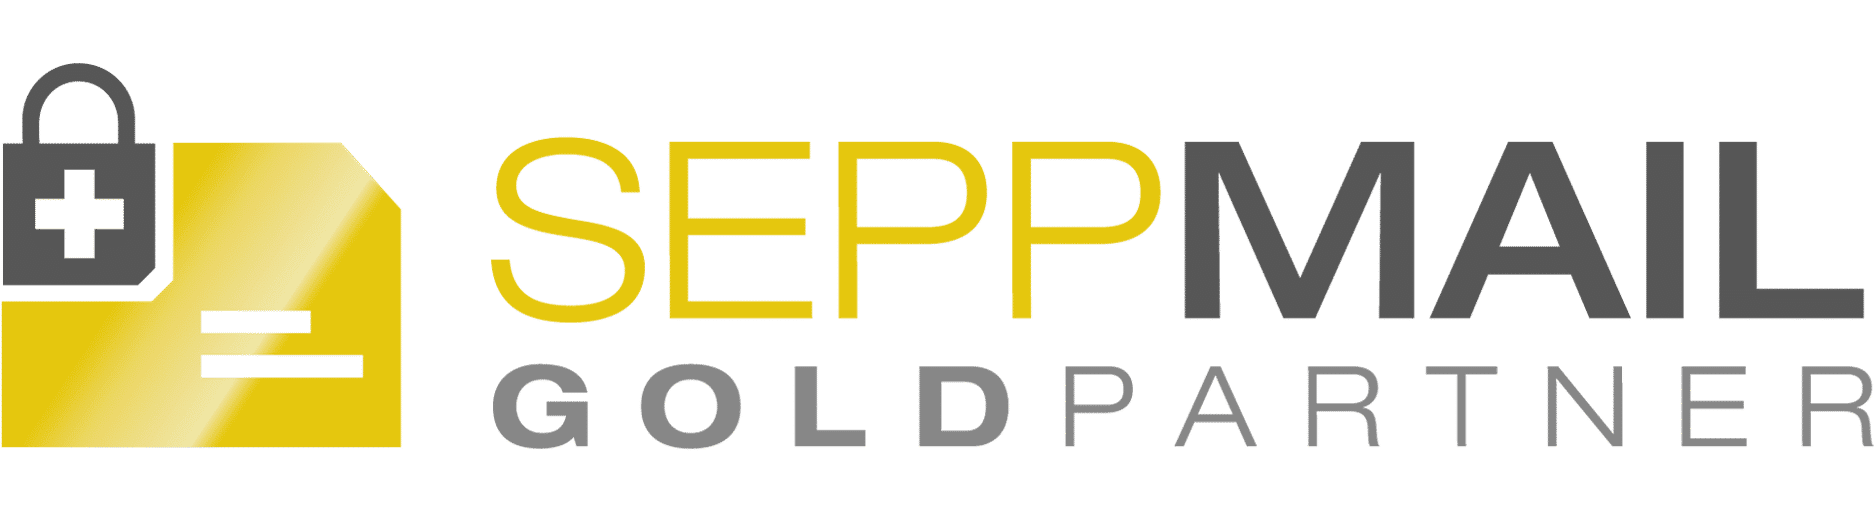 SEPPmail Gold Partner Logo